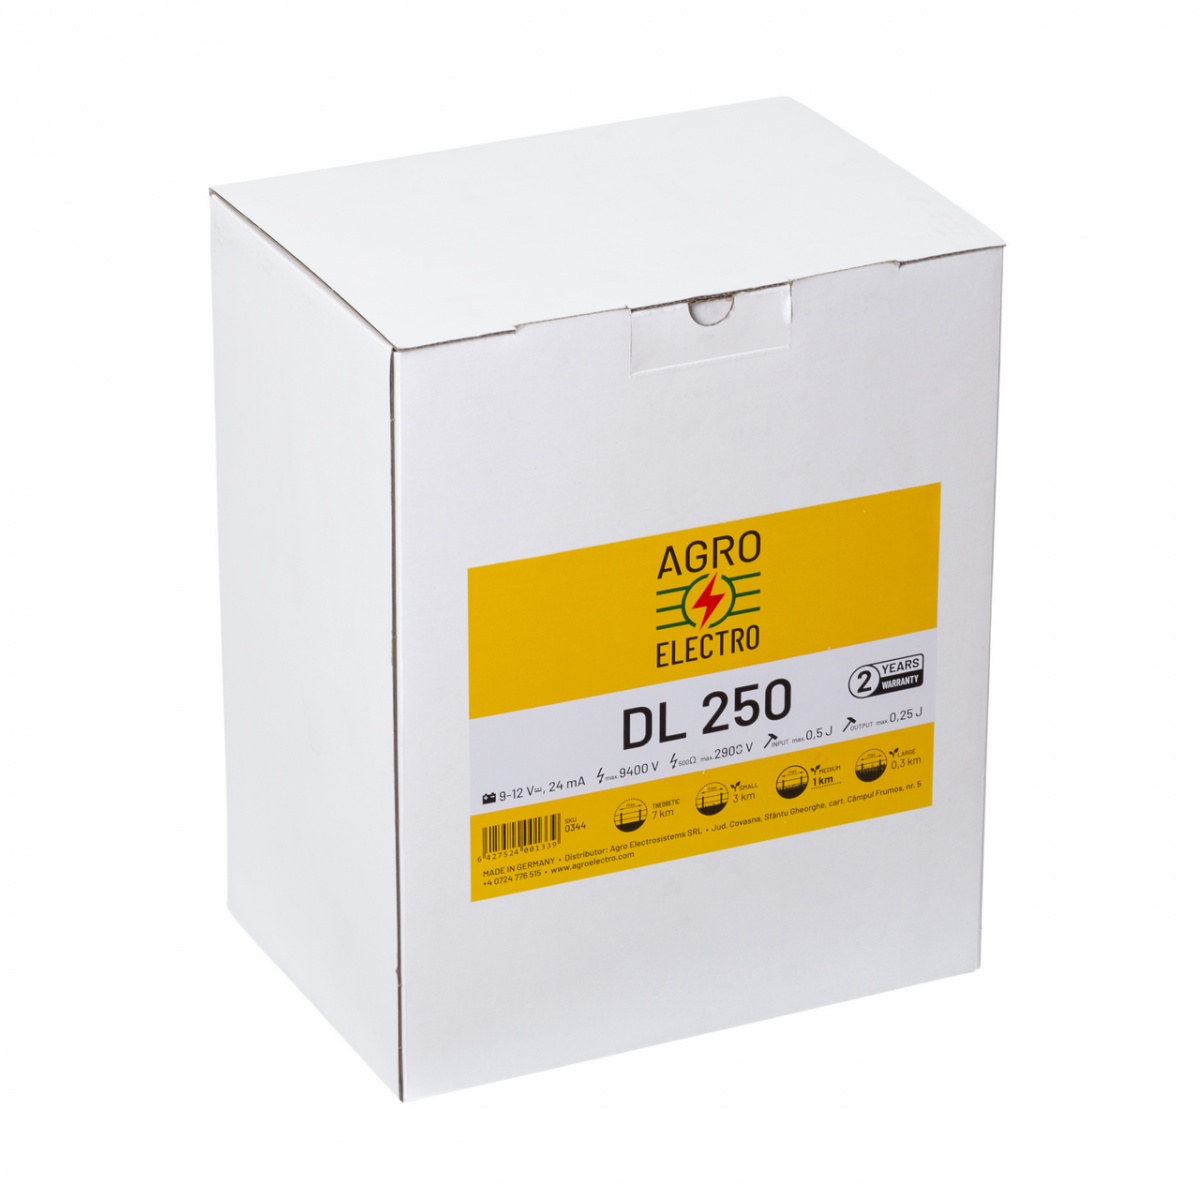 DL 250 villanypásztor készülék, 9-12 V, 0,25 Joule